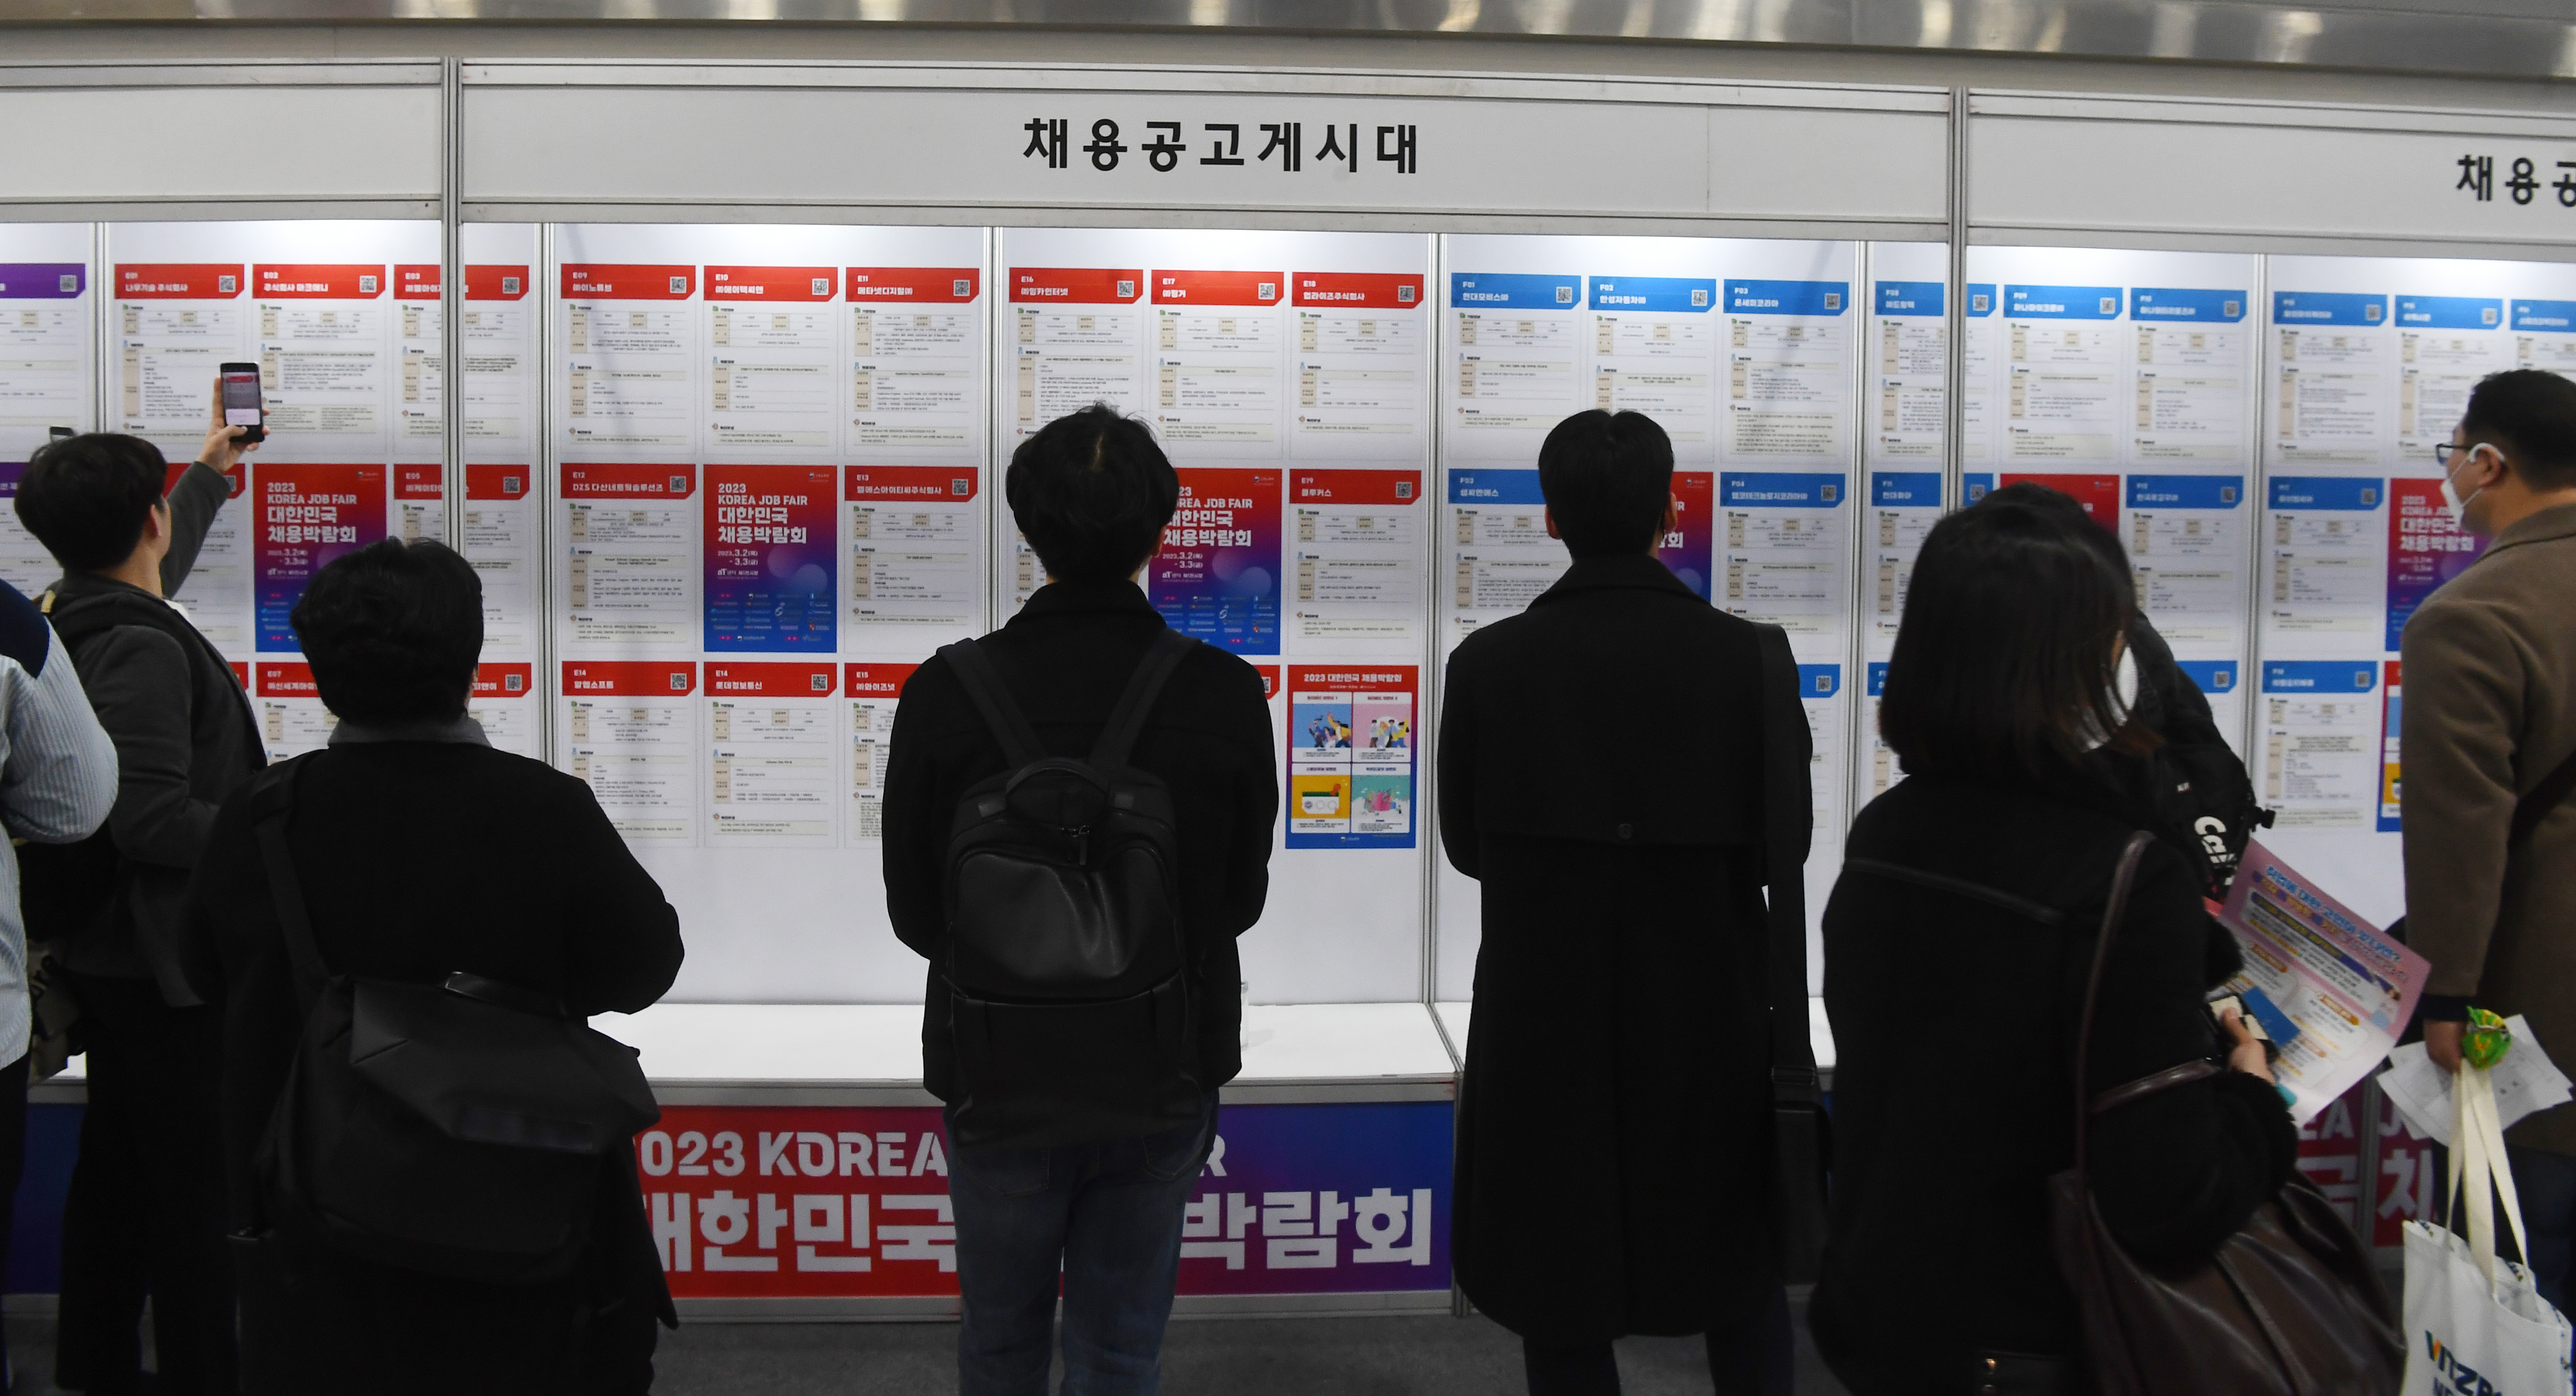 2일 서울 서초구aT센터에서 열린 ‘대한민국 채용박람회’에 참가한 구직자들이 채용게시판을 보고 있다2023.3.2안주영 전문기자